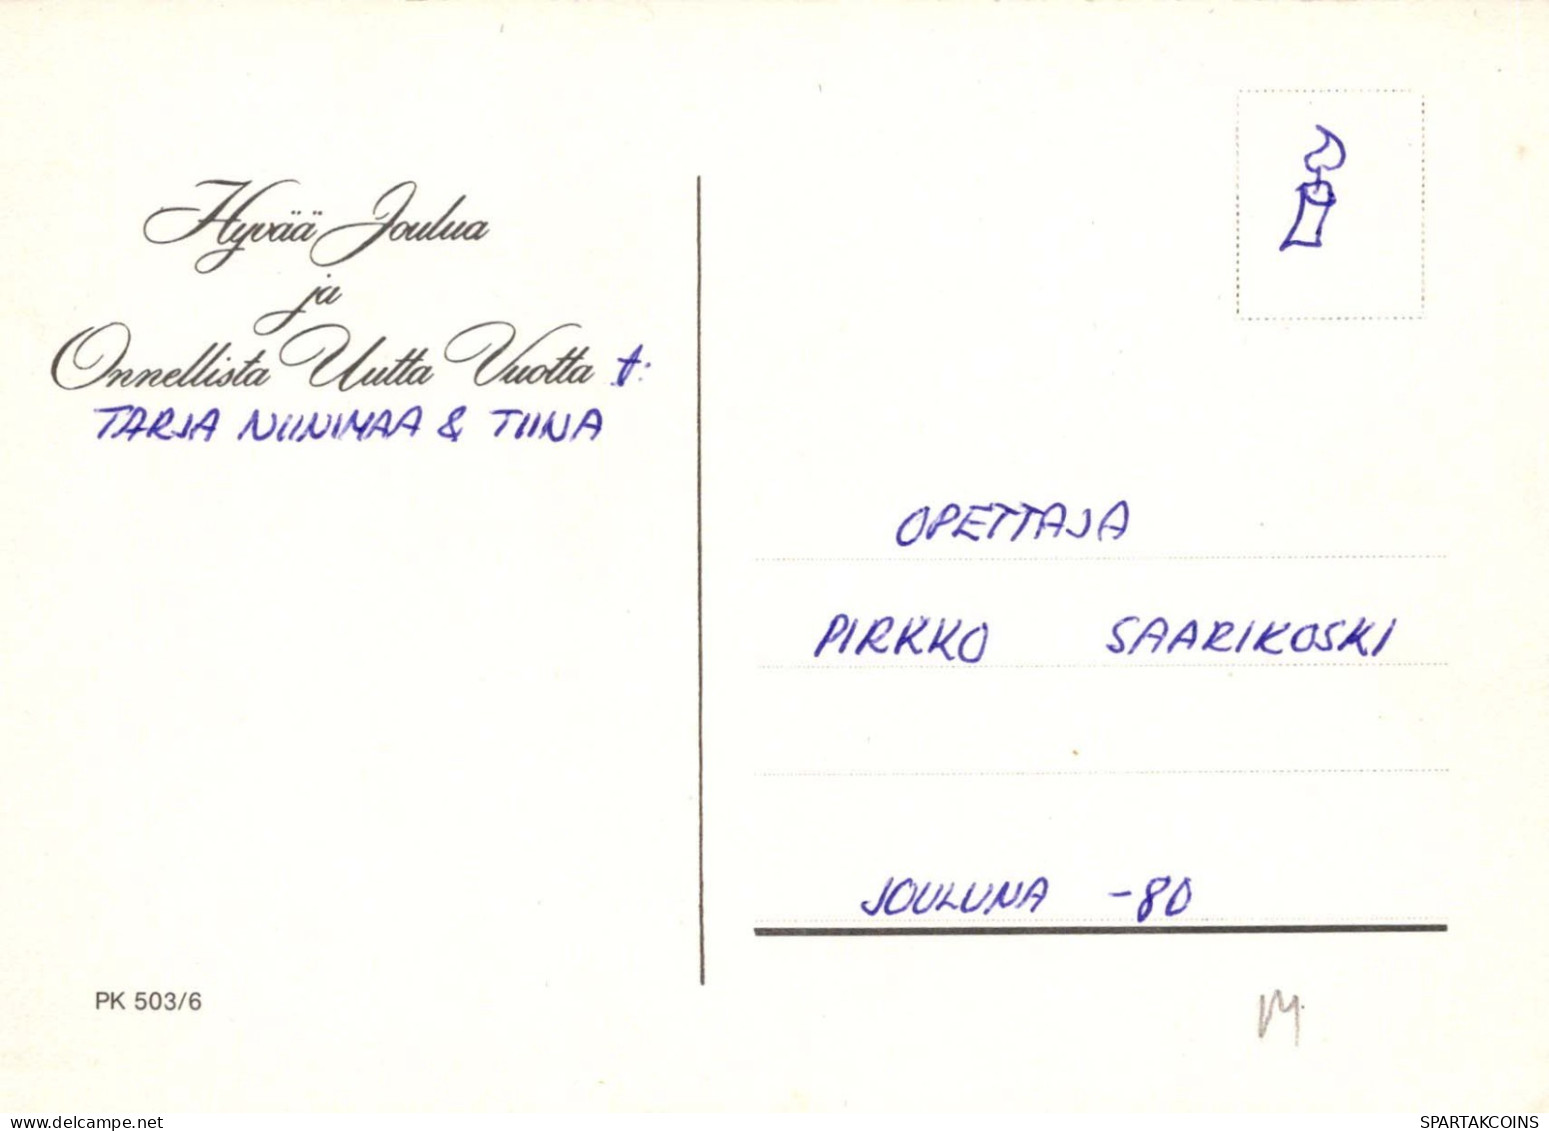 NIÑOS NIÑOS Escena S Paisajes Vintage Tarjeta Postal CPSM #PBU277.ES - Scenes & Landscapes